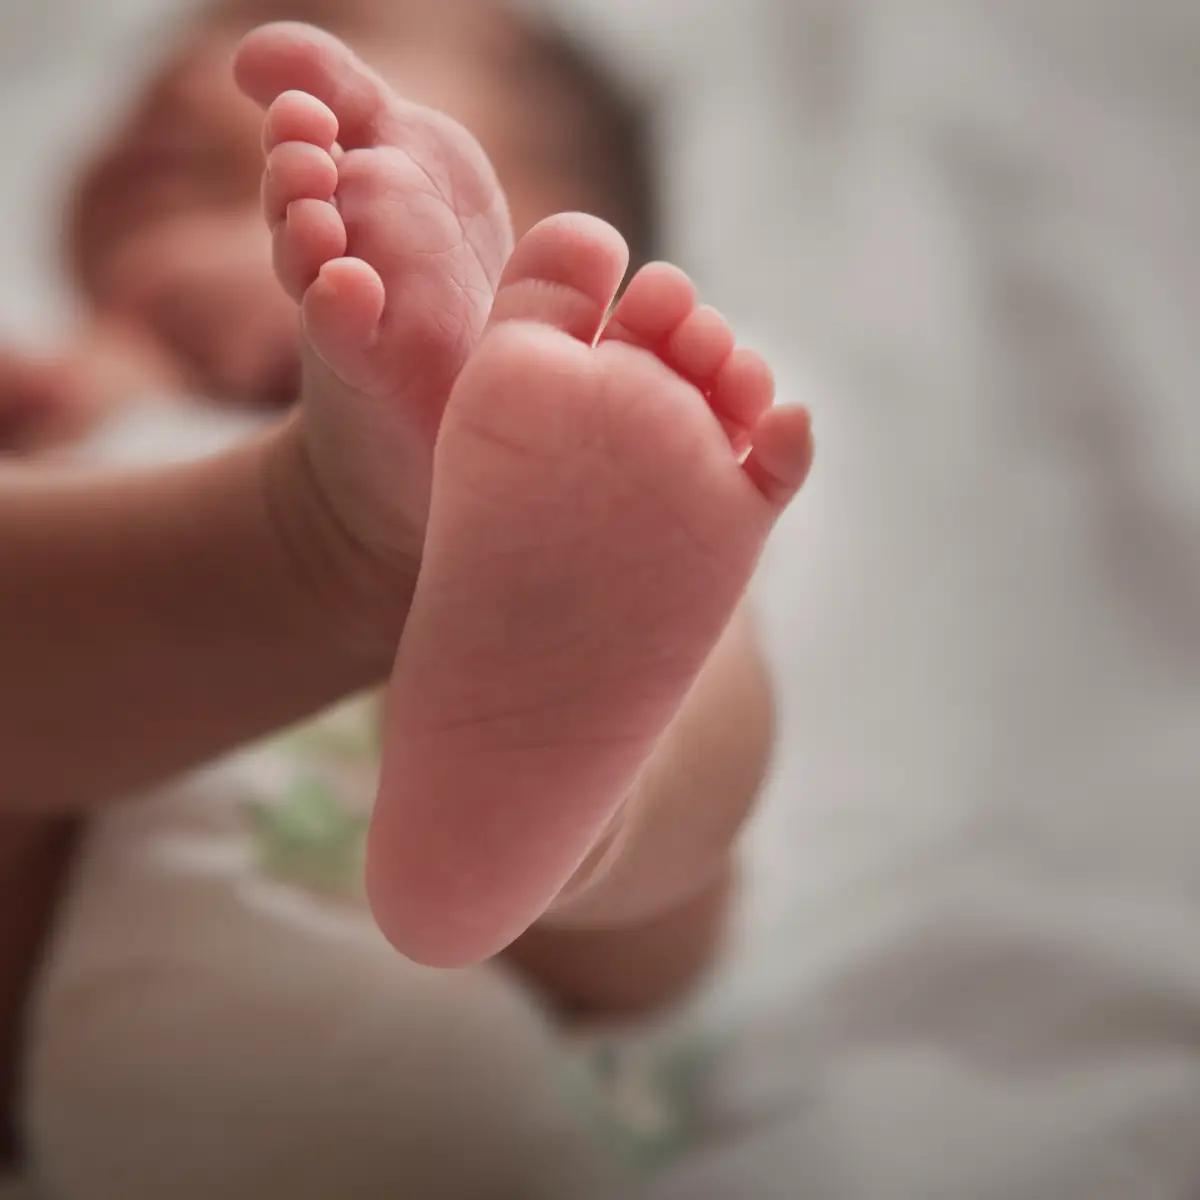 Parto normal: Bebês nascidos por cesariana têm mais micróbios